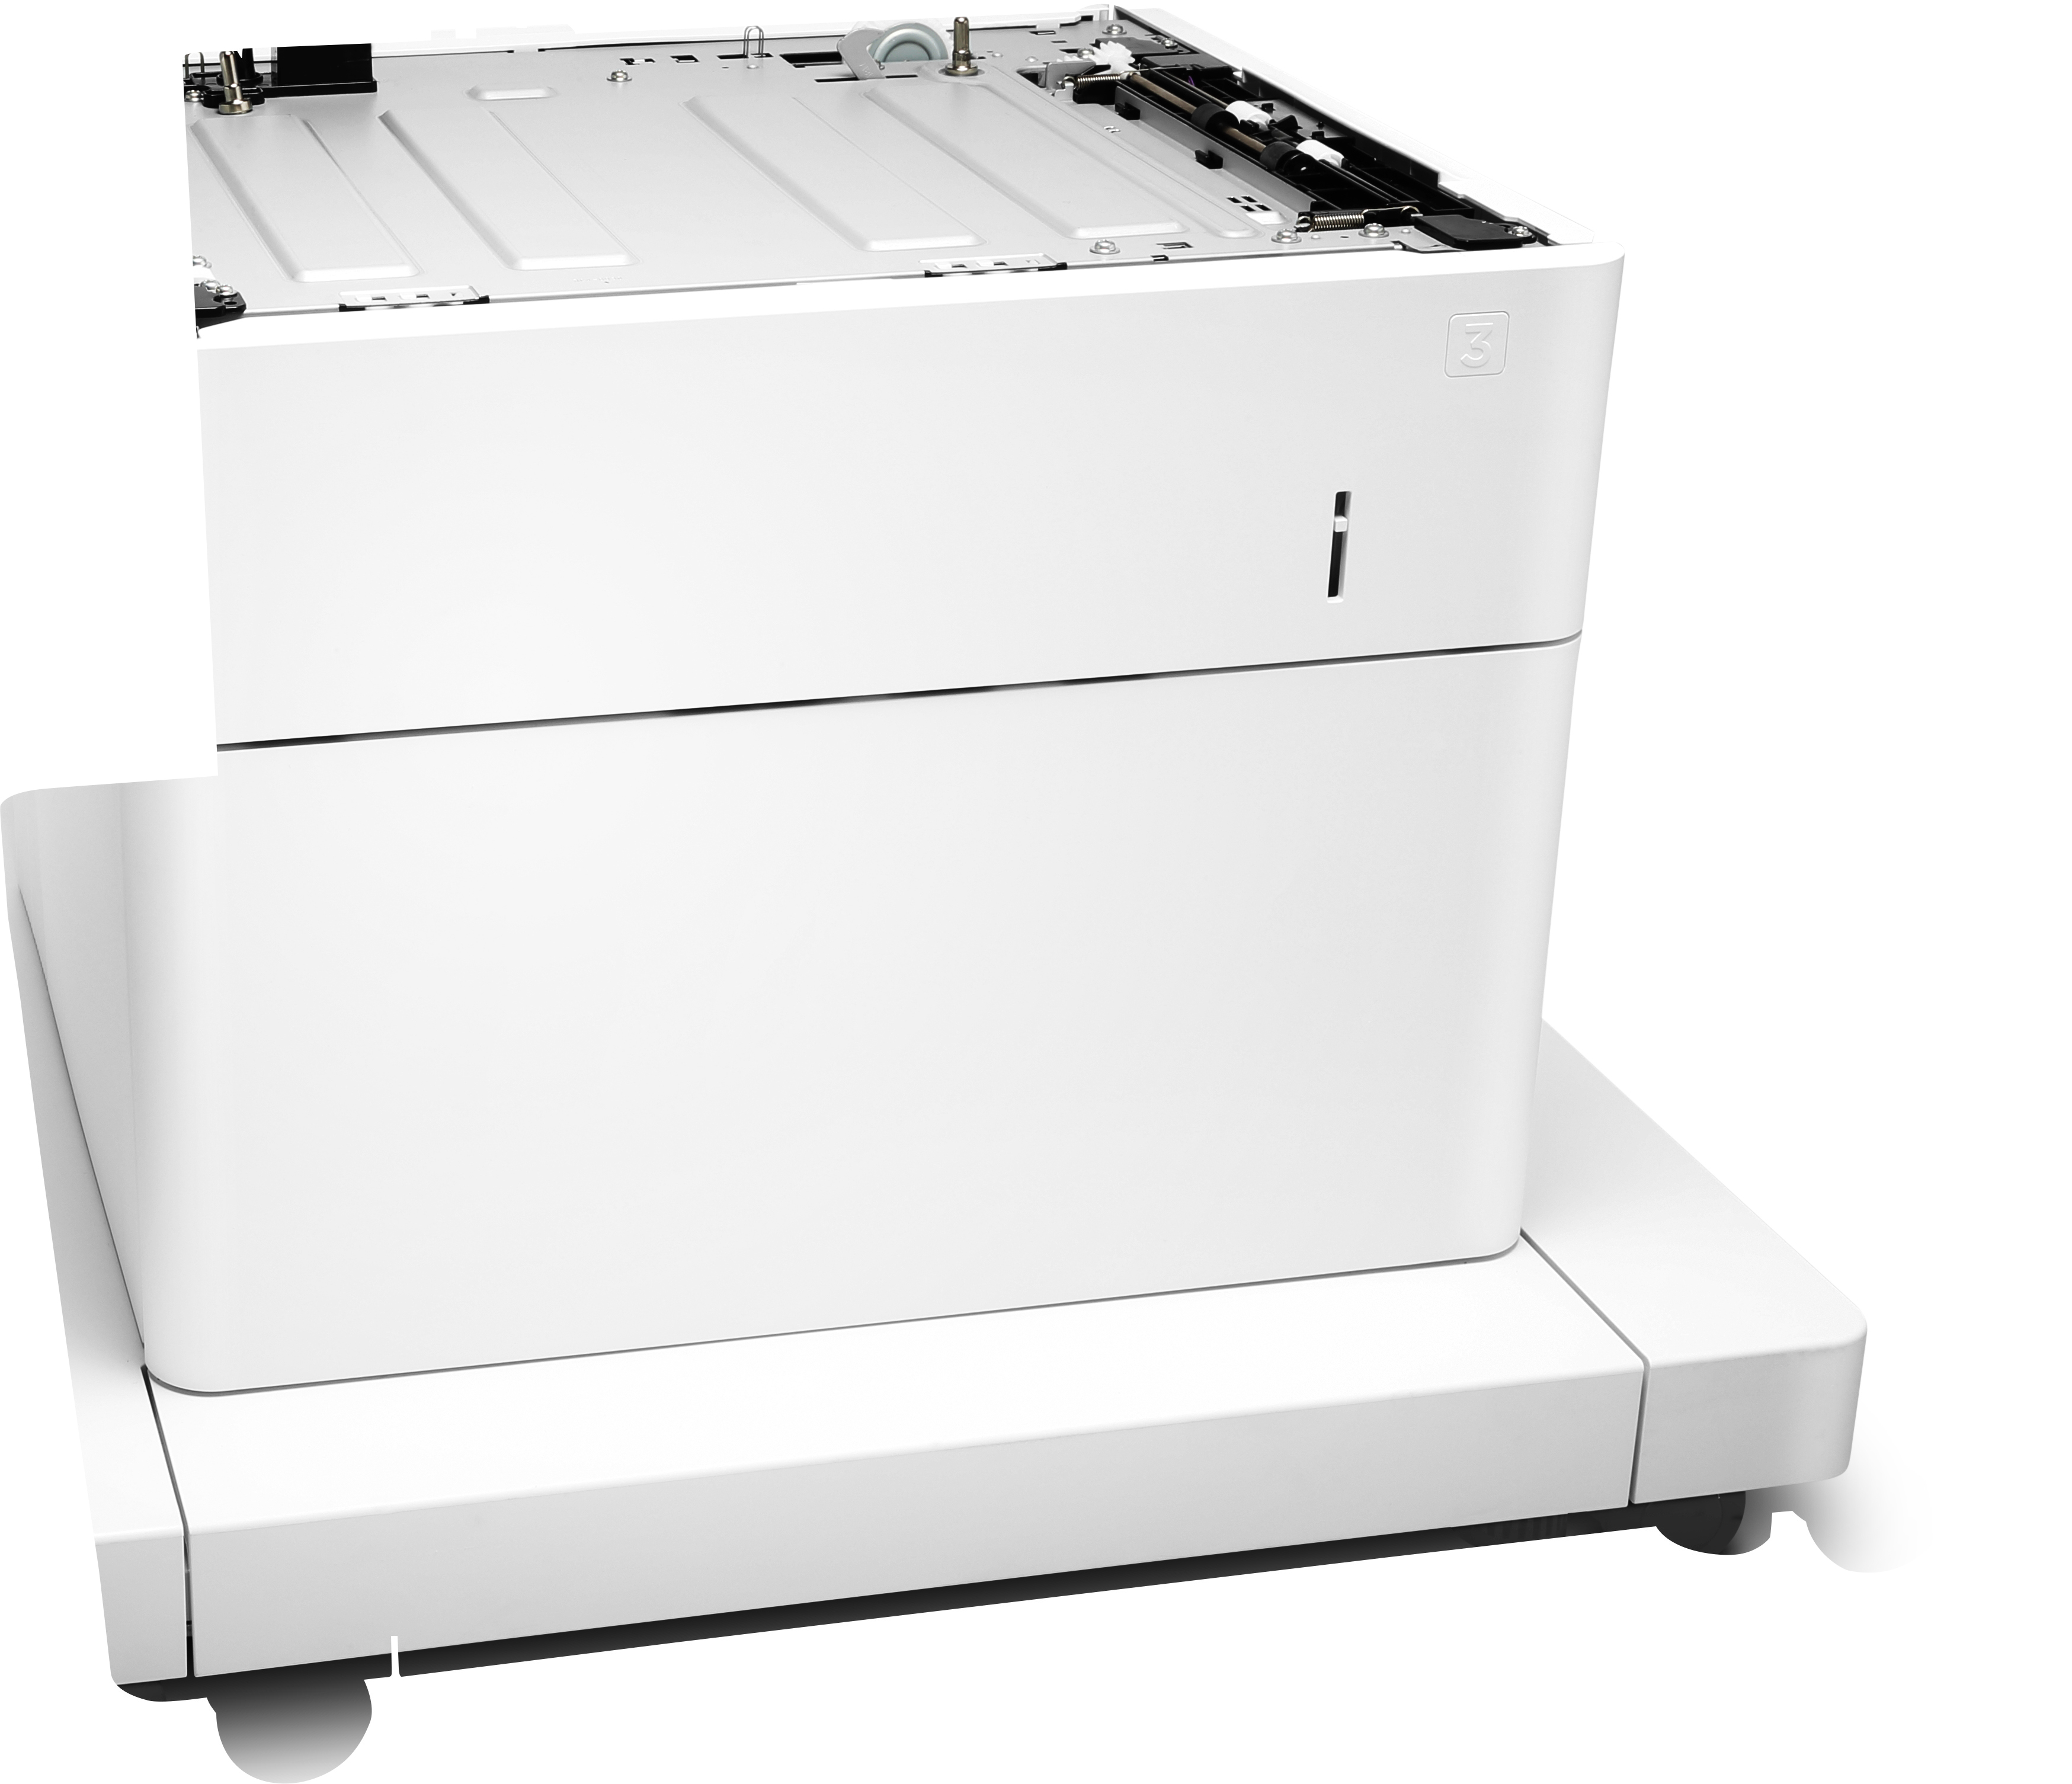 HP Papierzuführung und Schrank - Druckerbasis mit Medienzuführung - 550 Blätter in 1 Schubladen (Trays)